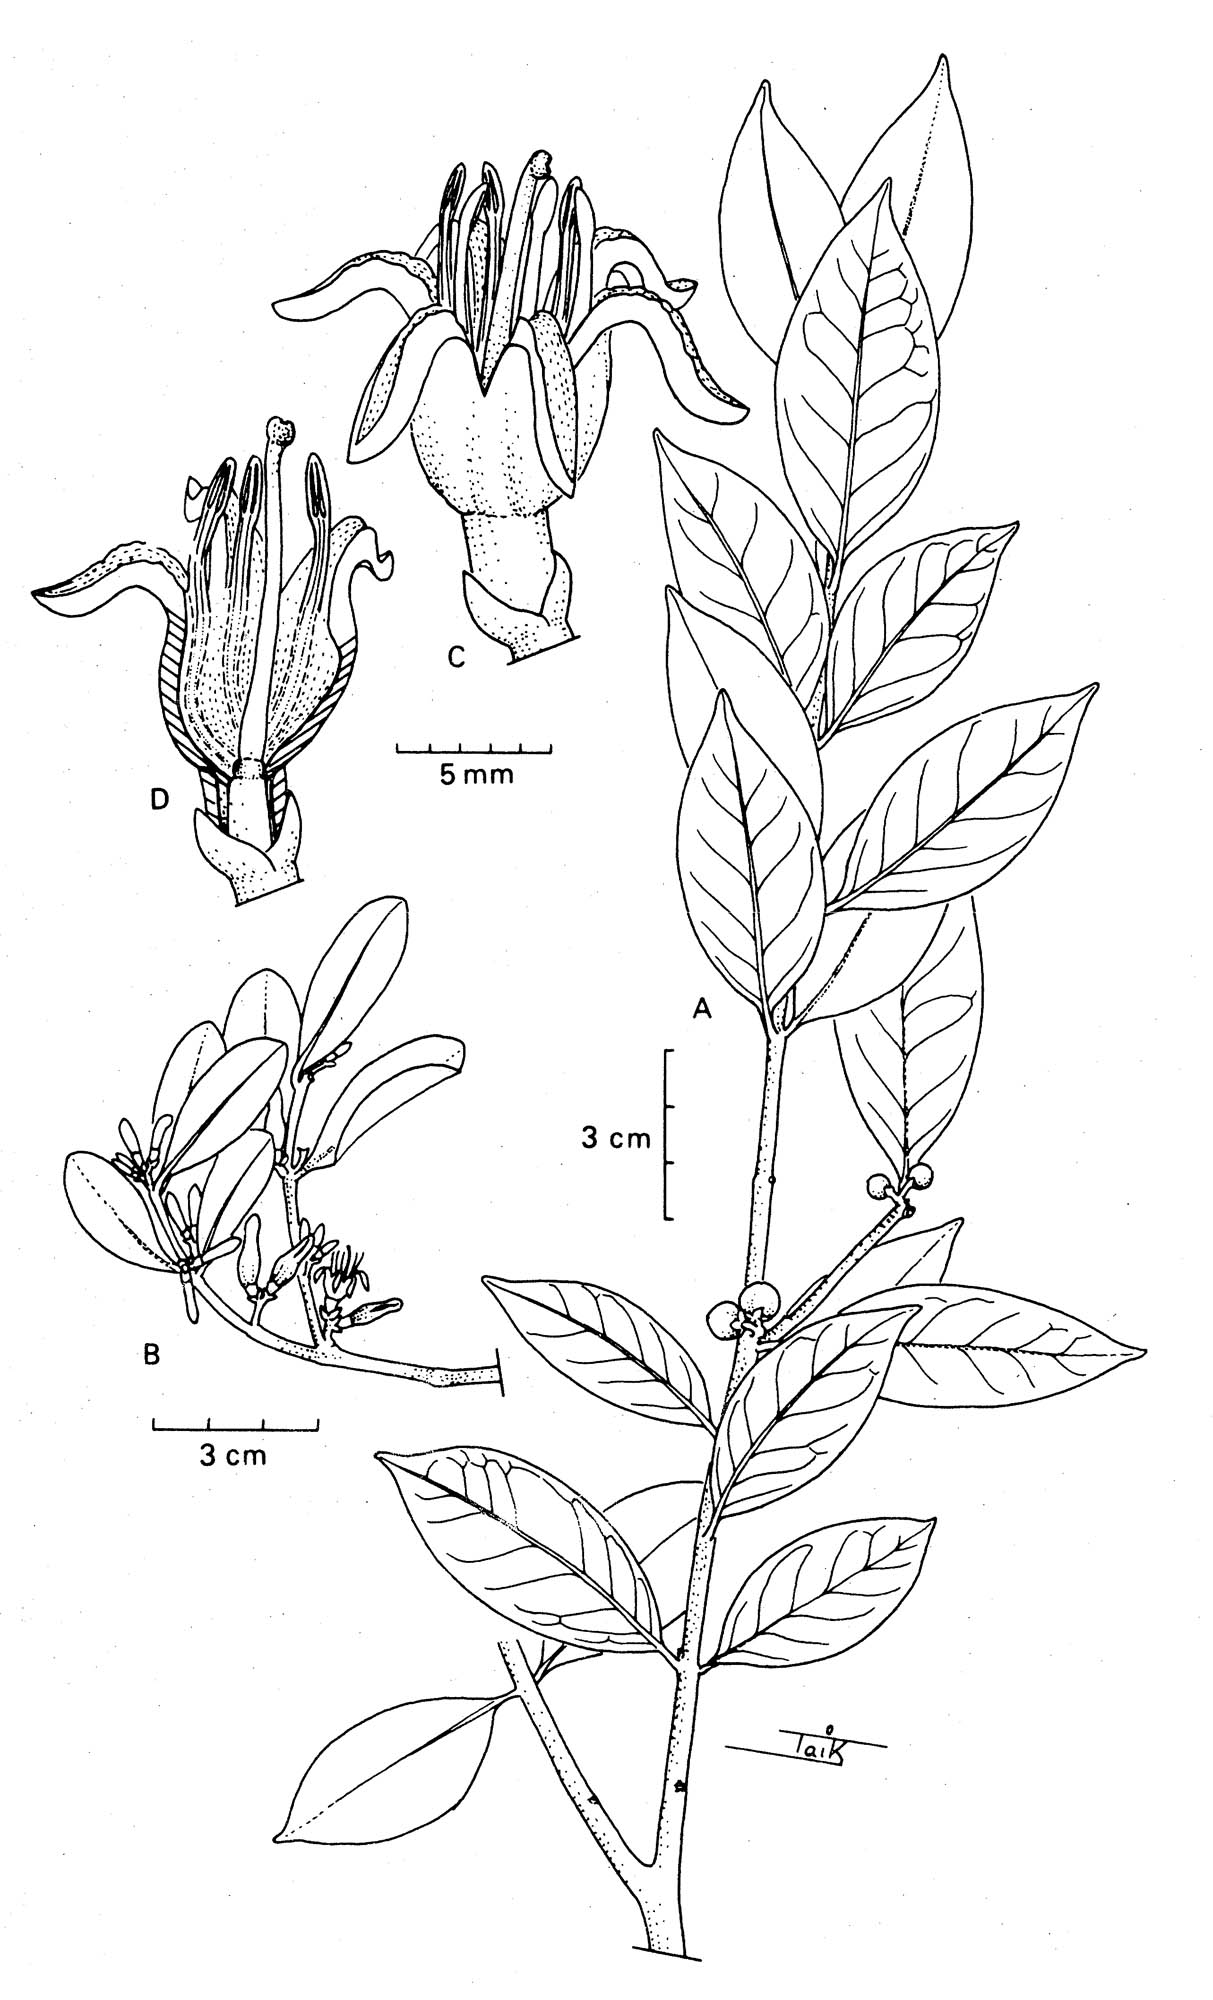 Macroselen cochinchinensis